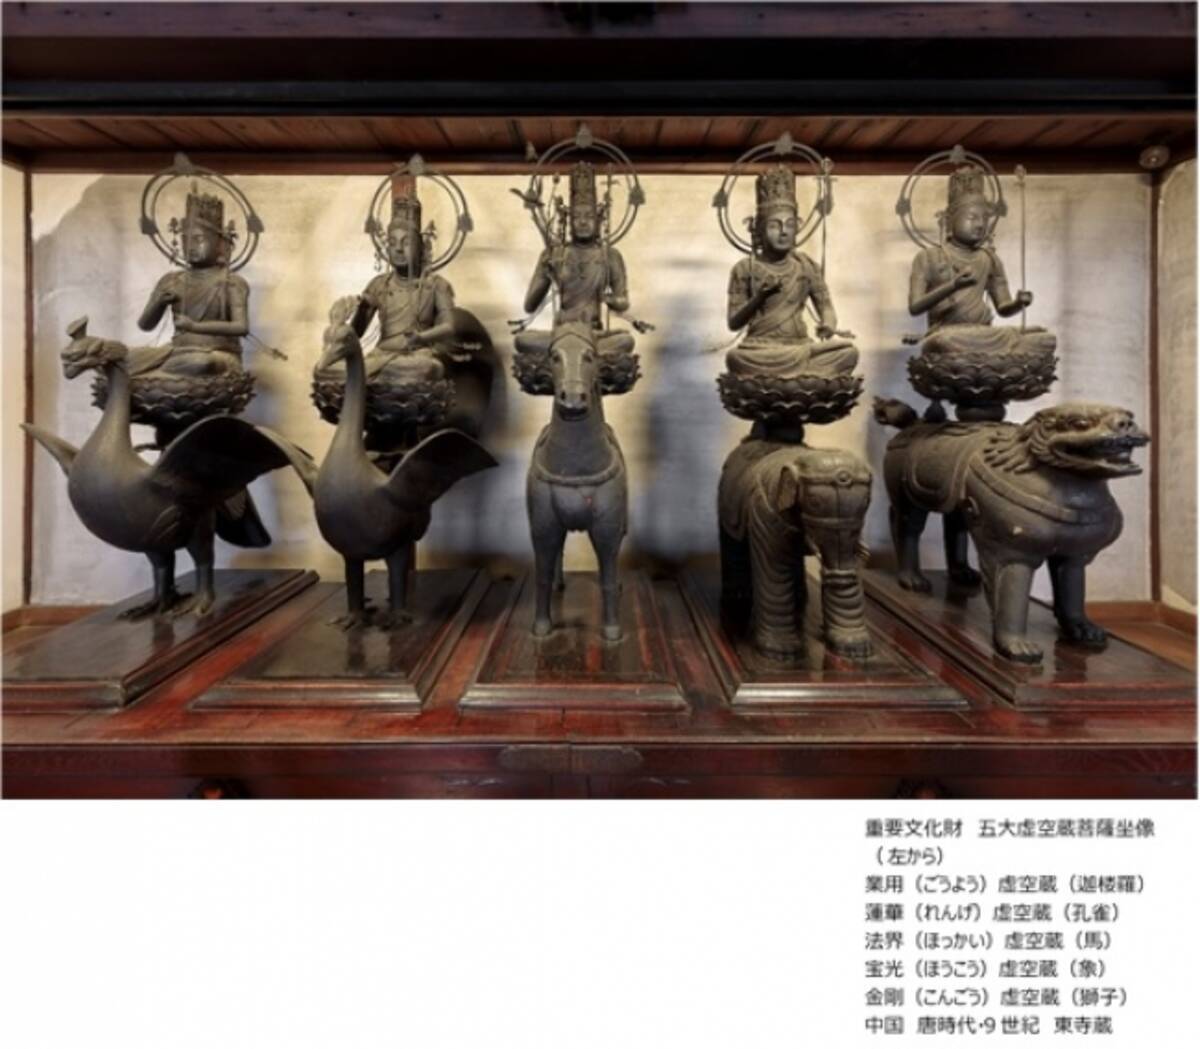 特別展「国宝 東寺-空海と仏像曼荼羅」開幕近づく 東寺講堂から15体の仏像が東京に！史上最多の「仏像曼荼羅」登場！！「五大虚空蔵菩薩坐像」も五体そろって展示！  (2019年2月25日) - エキサイトニュース